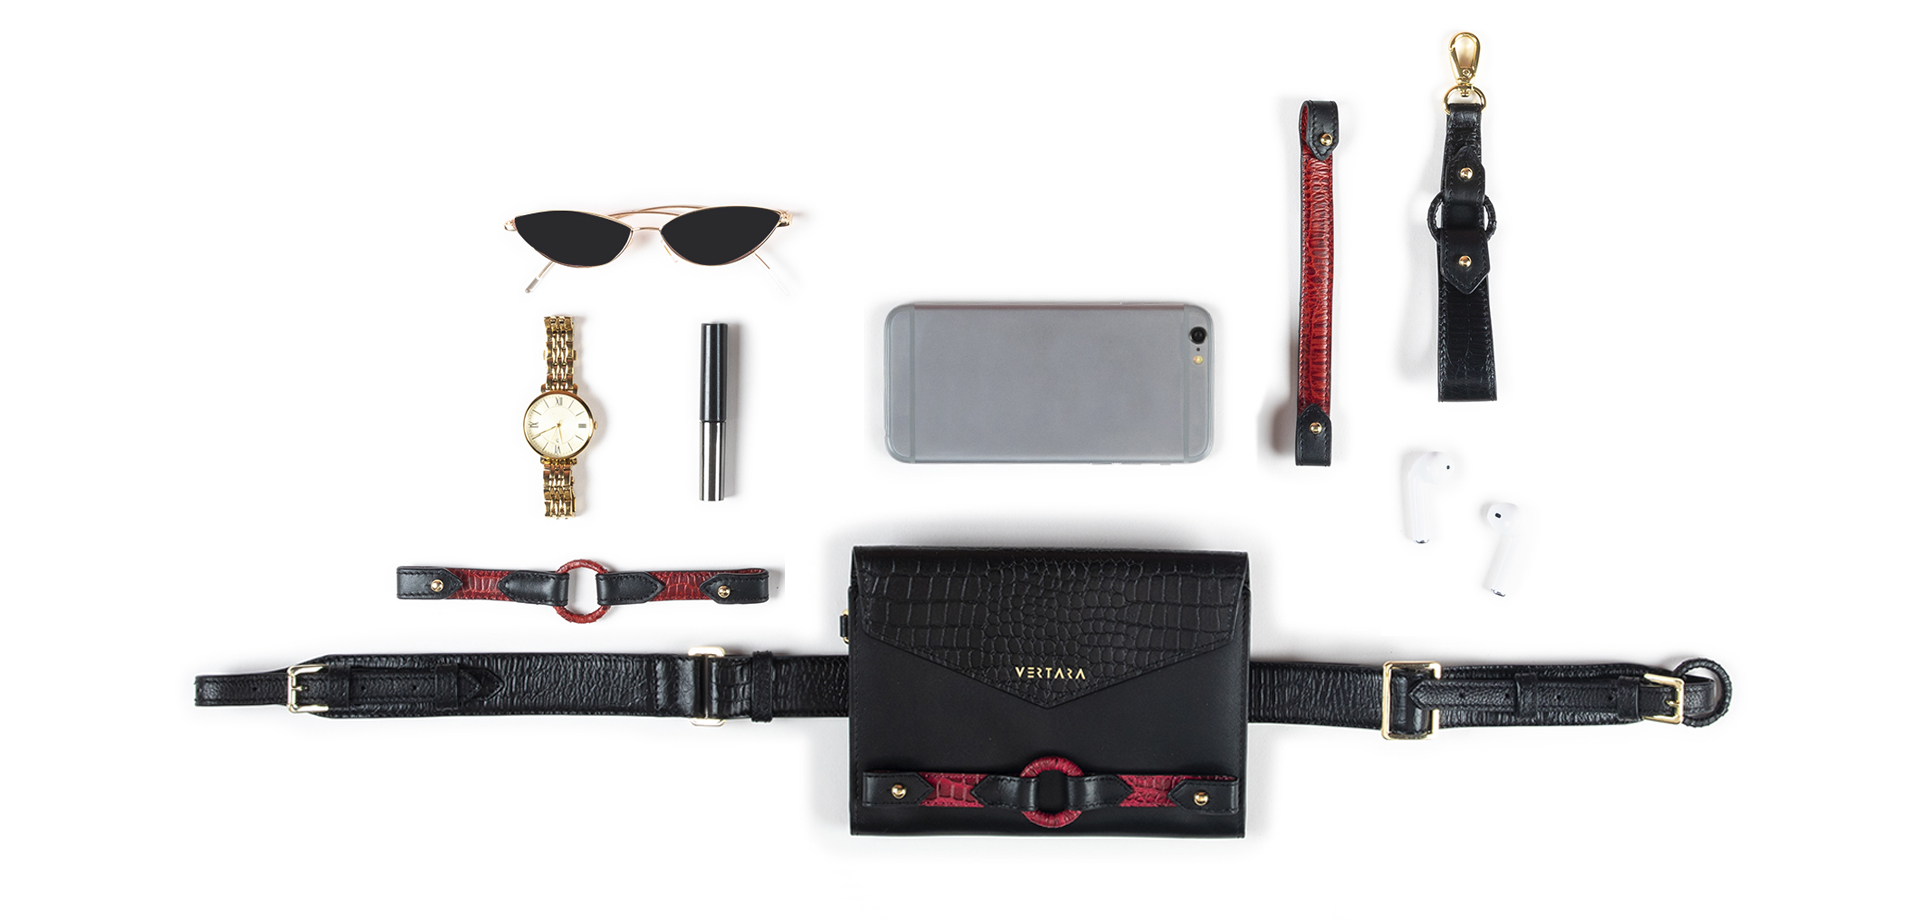 Ember Handsfree Belt Bag-clutch-wallet-wristlet with Ember Bracelets in Black Leather fits cards, cash & phone.